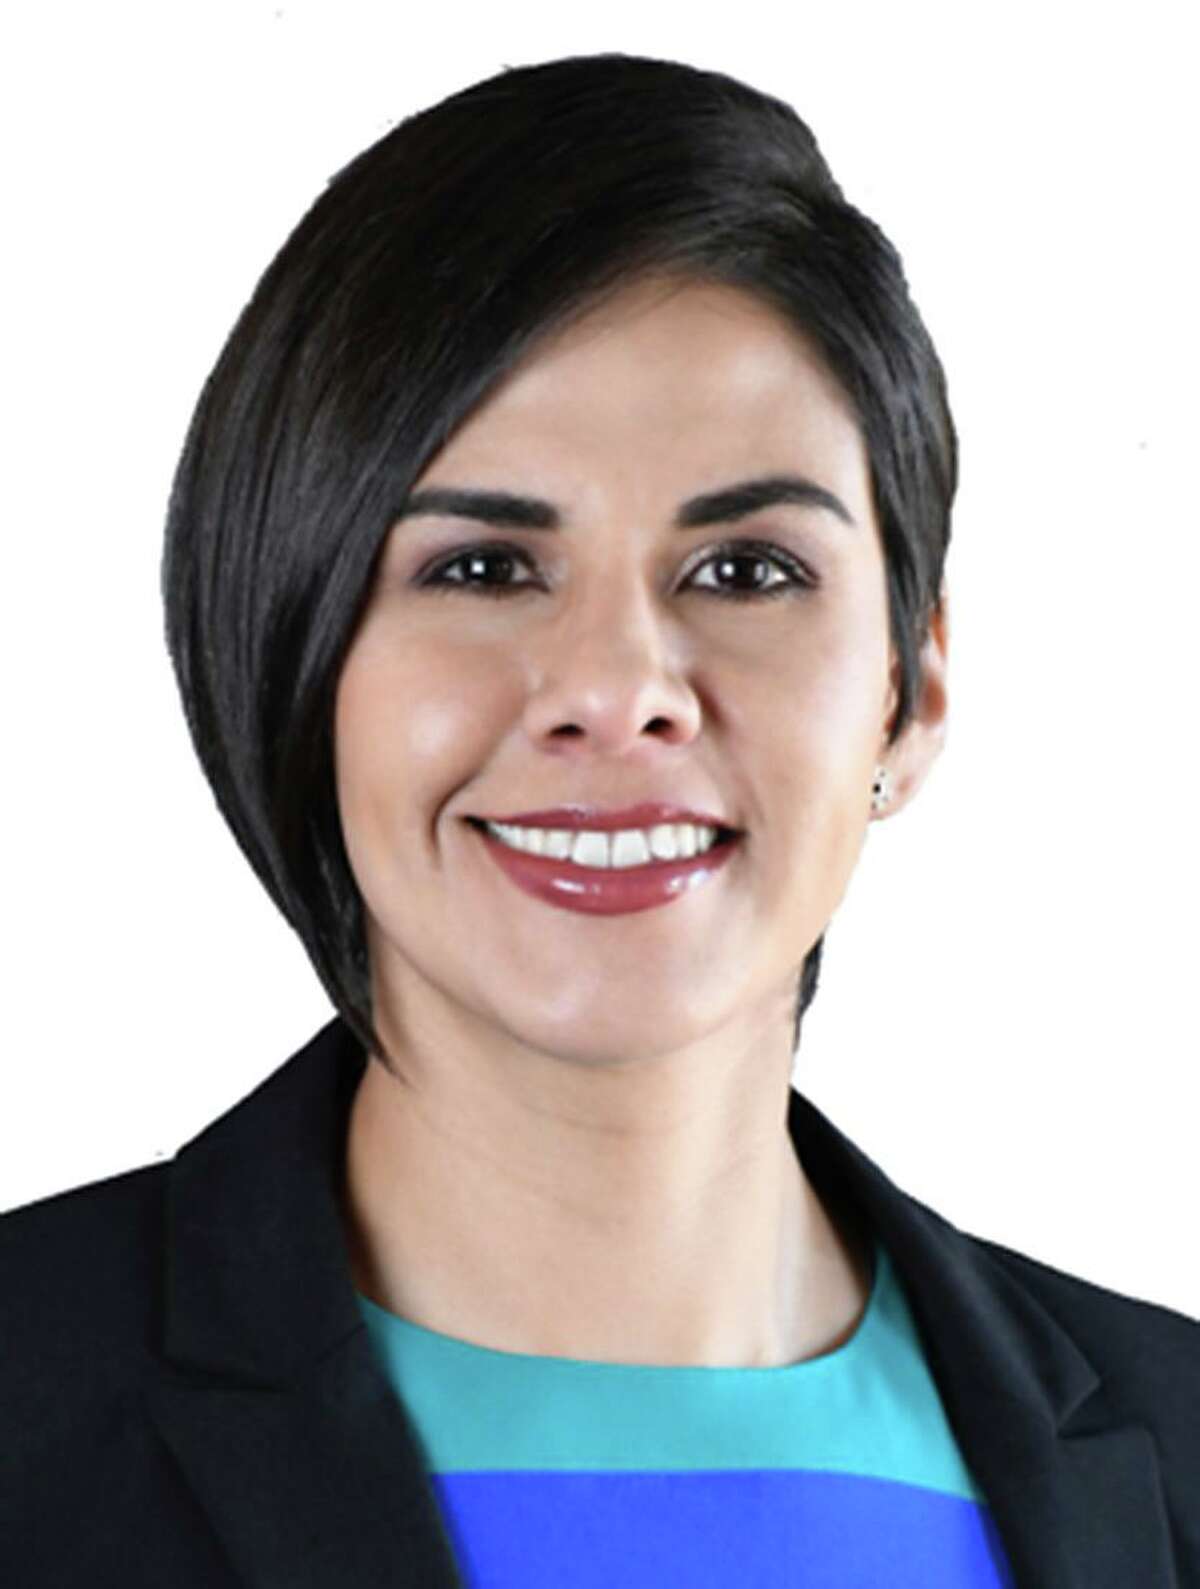 State Rep. Jessica Gonzalez (D).